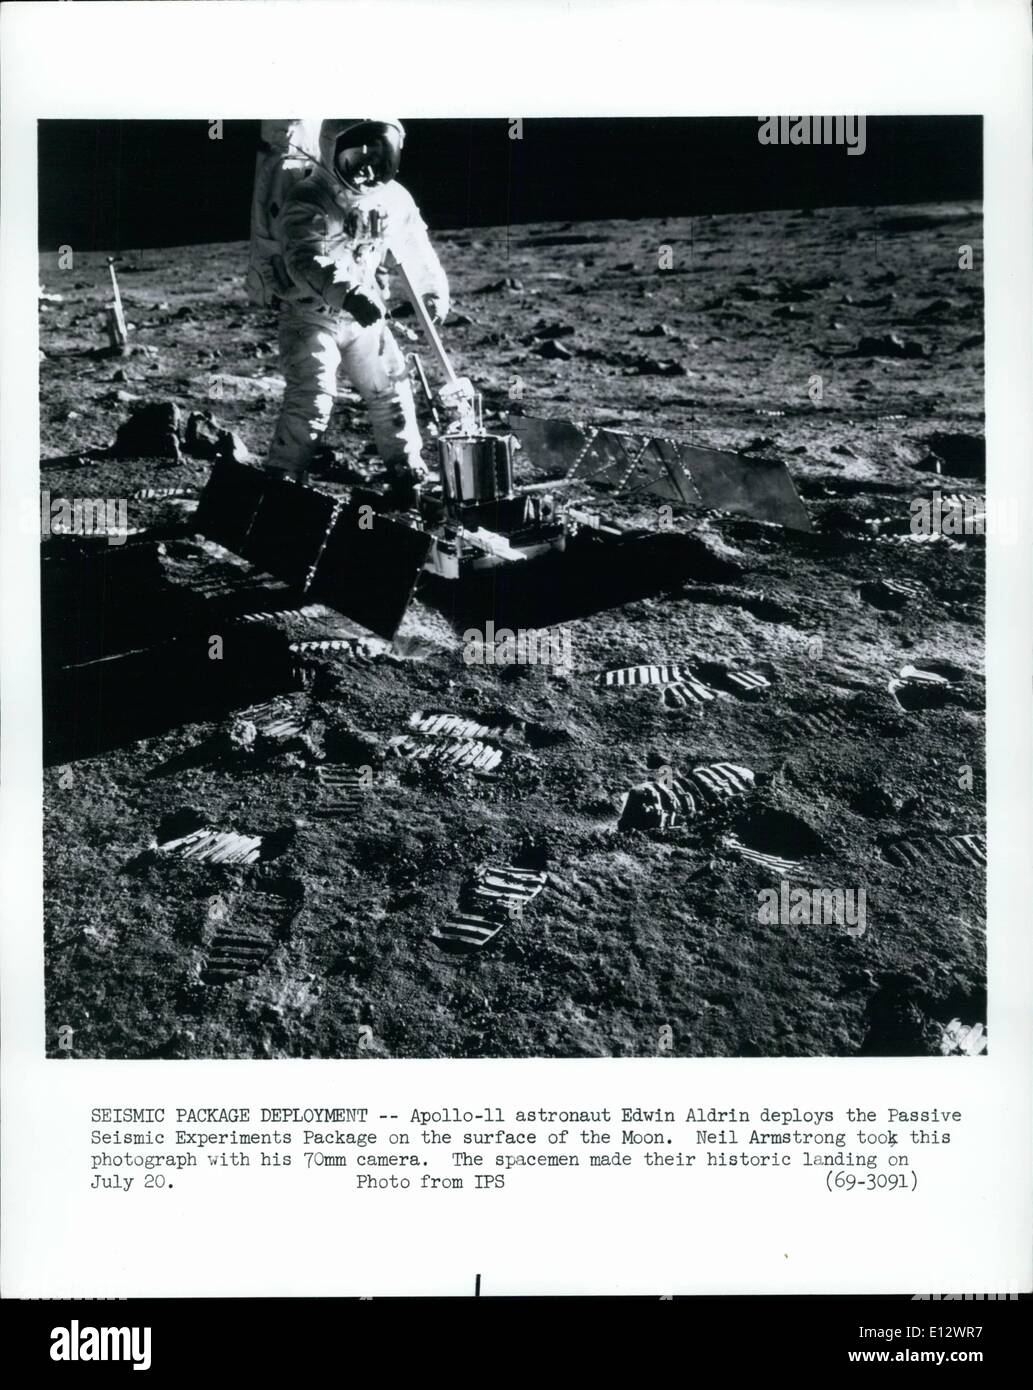 26. Februar 2012 - seismische Paketbereitstellung - Apollo 11 Astronaut Edwin Aldrin setzt das Passive seismische Experimente-Paket auf der Oberfläche des Mondes. Neil Armstrong nahm dieses Foto mit seiner 70mm Kamera. Der Raum machte ihre historischen Landung am 20. Juli. Stockfoto